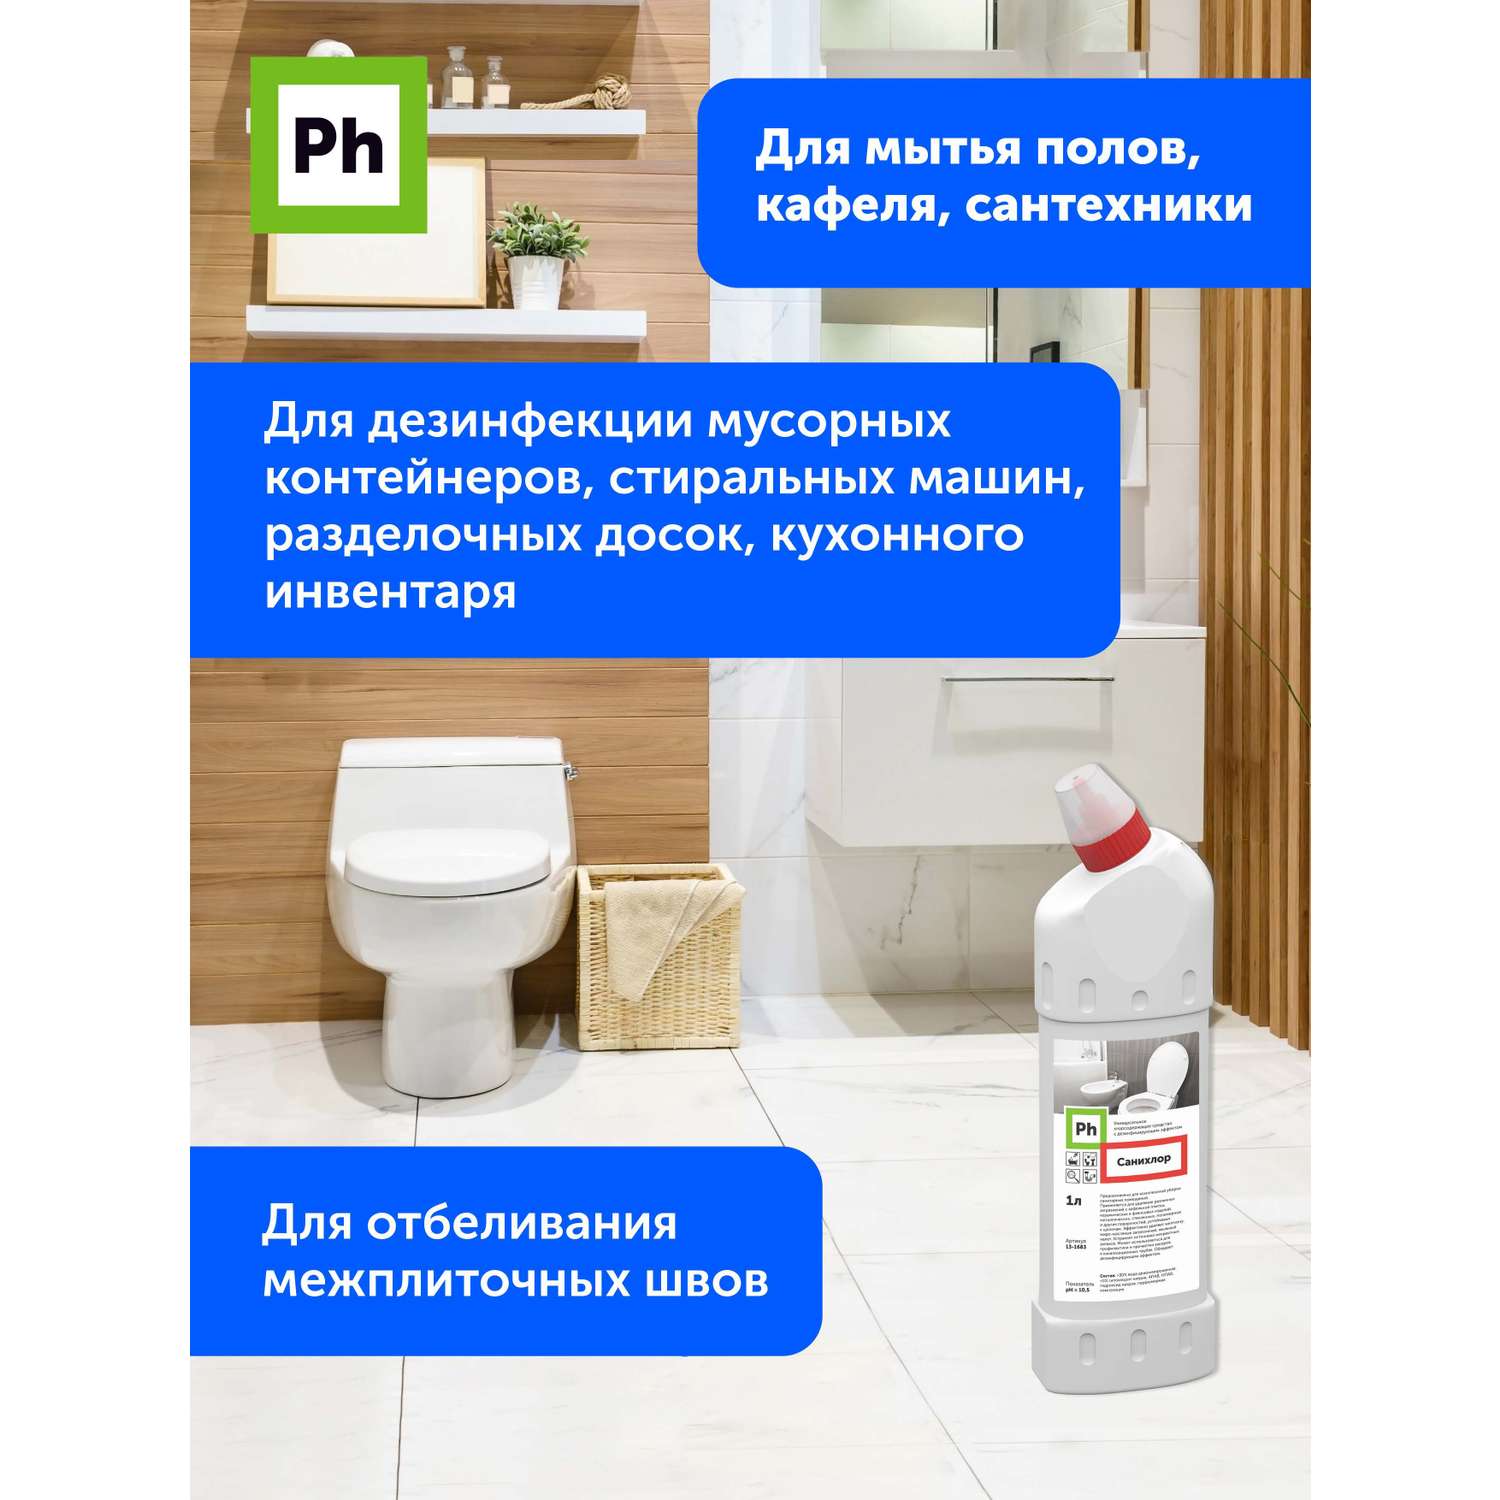 Набор средств для уборки Ph профессиональный Чистый туалет - фото 7